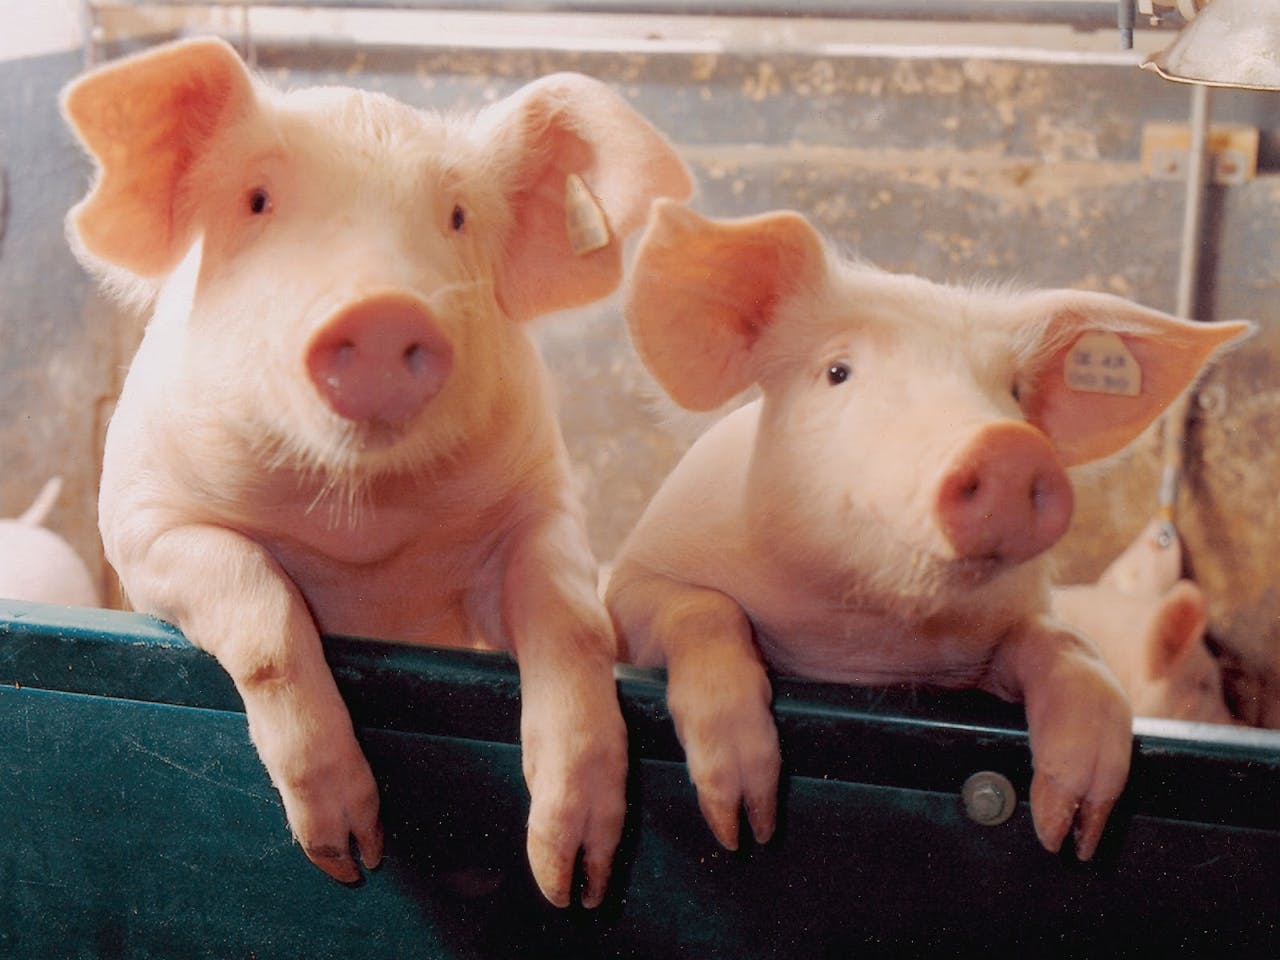 Twee varkens in een stal met hun voorpoten over de reling.